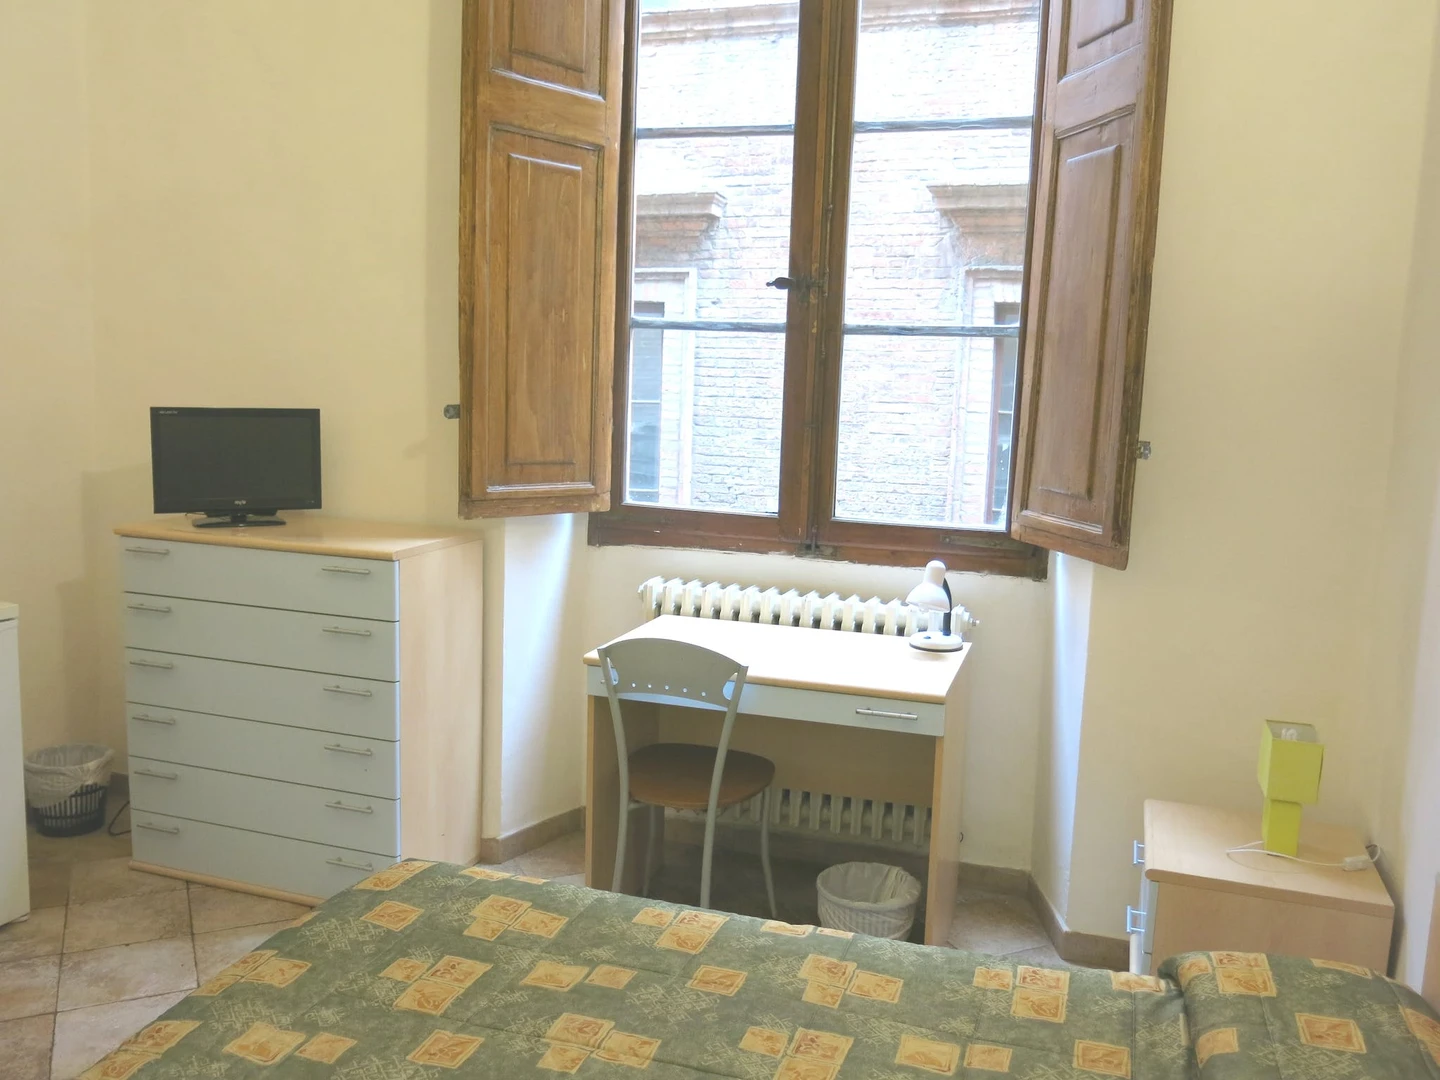 Gemeinsames Zimmer mit einem anderen Studierenden in Siena